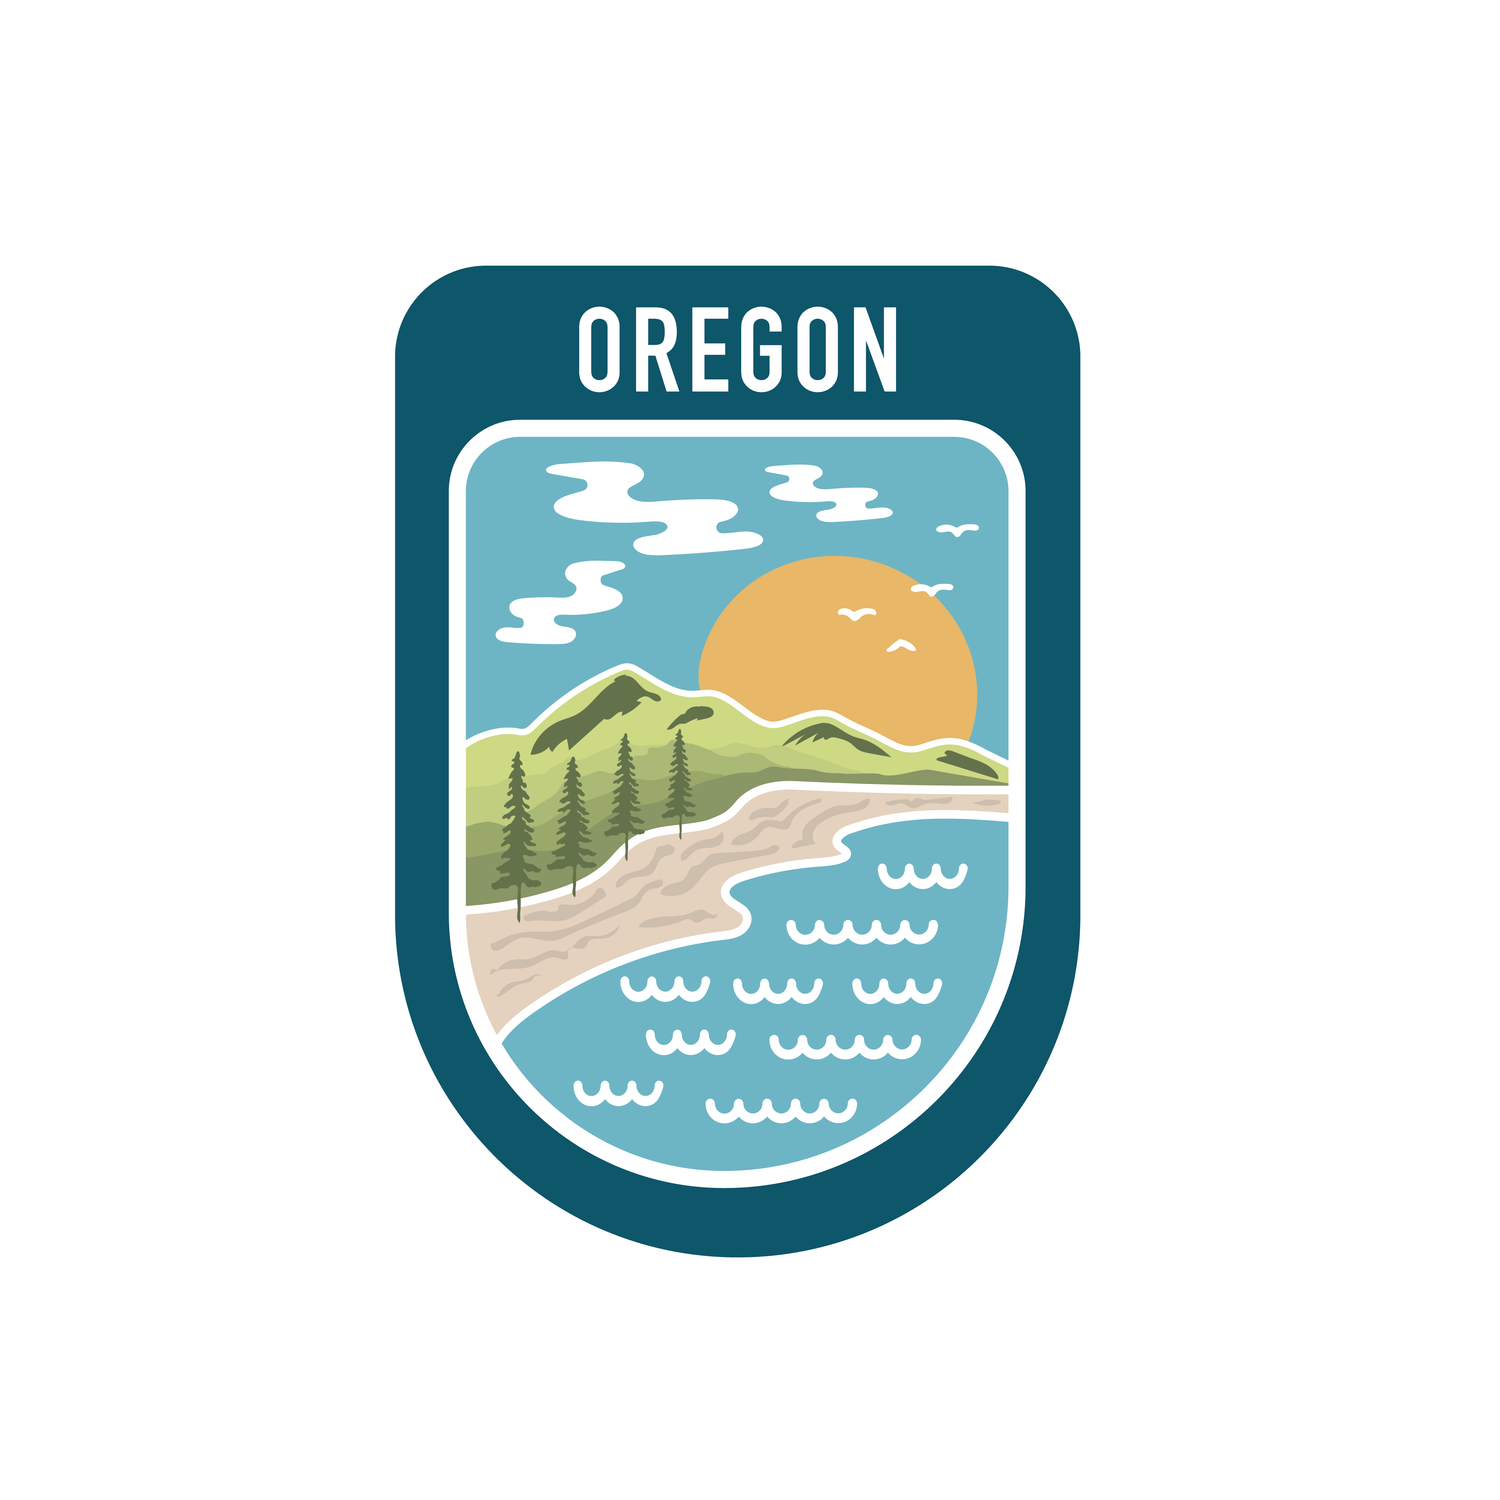 State Scenic Route Oregon - Vinyl Sticker